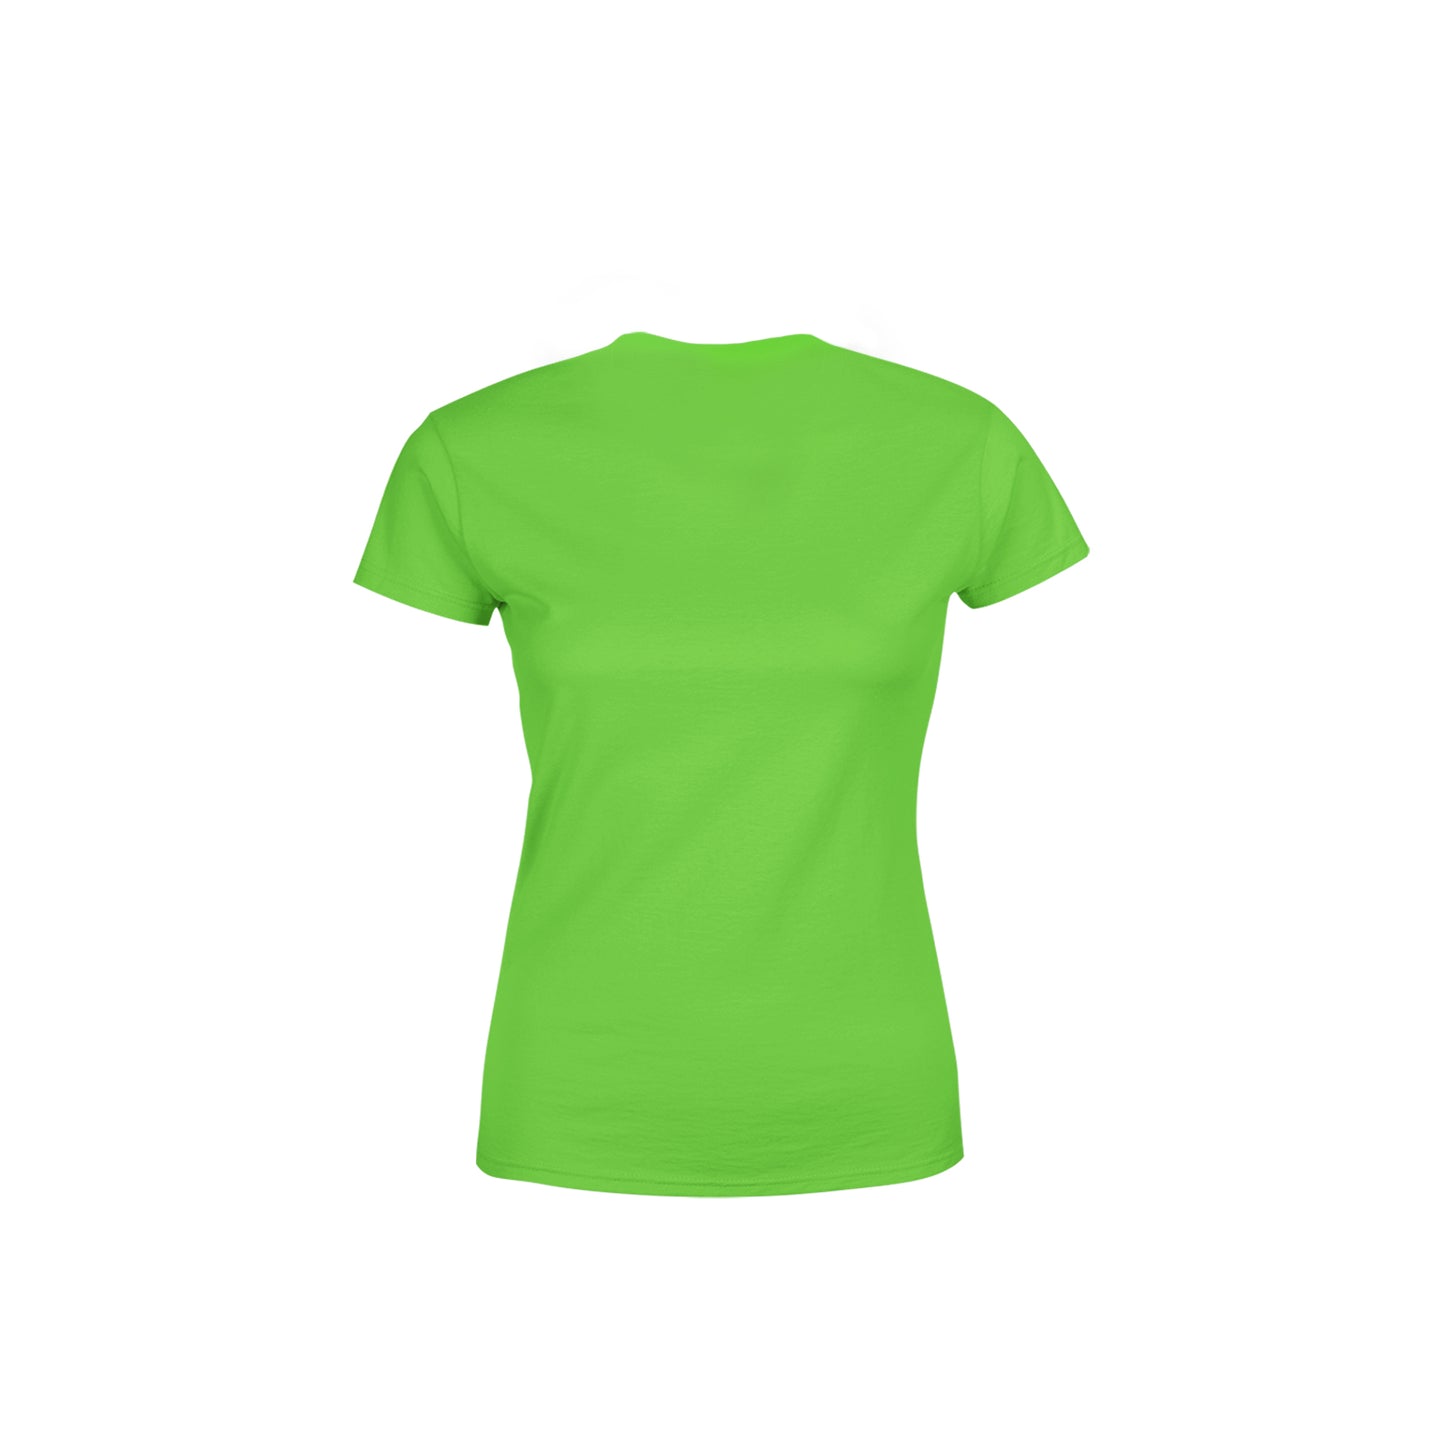 41 Number Women's T-Shirt (Liril Green)